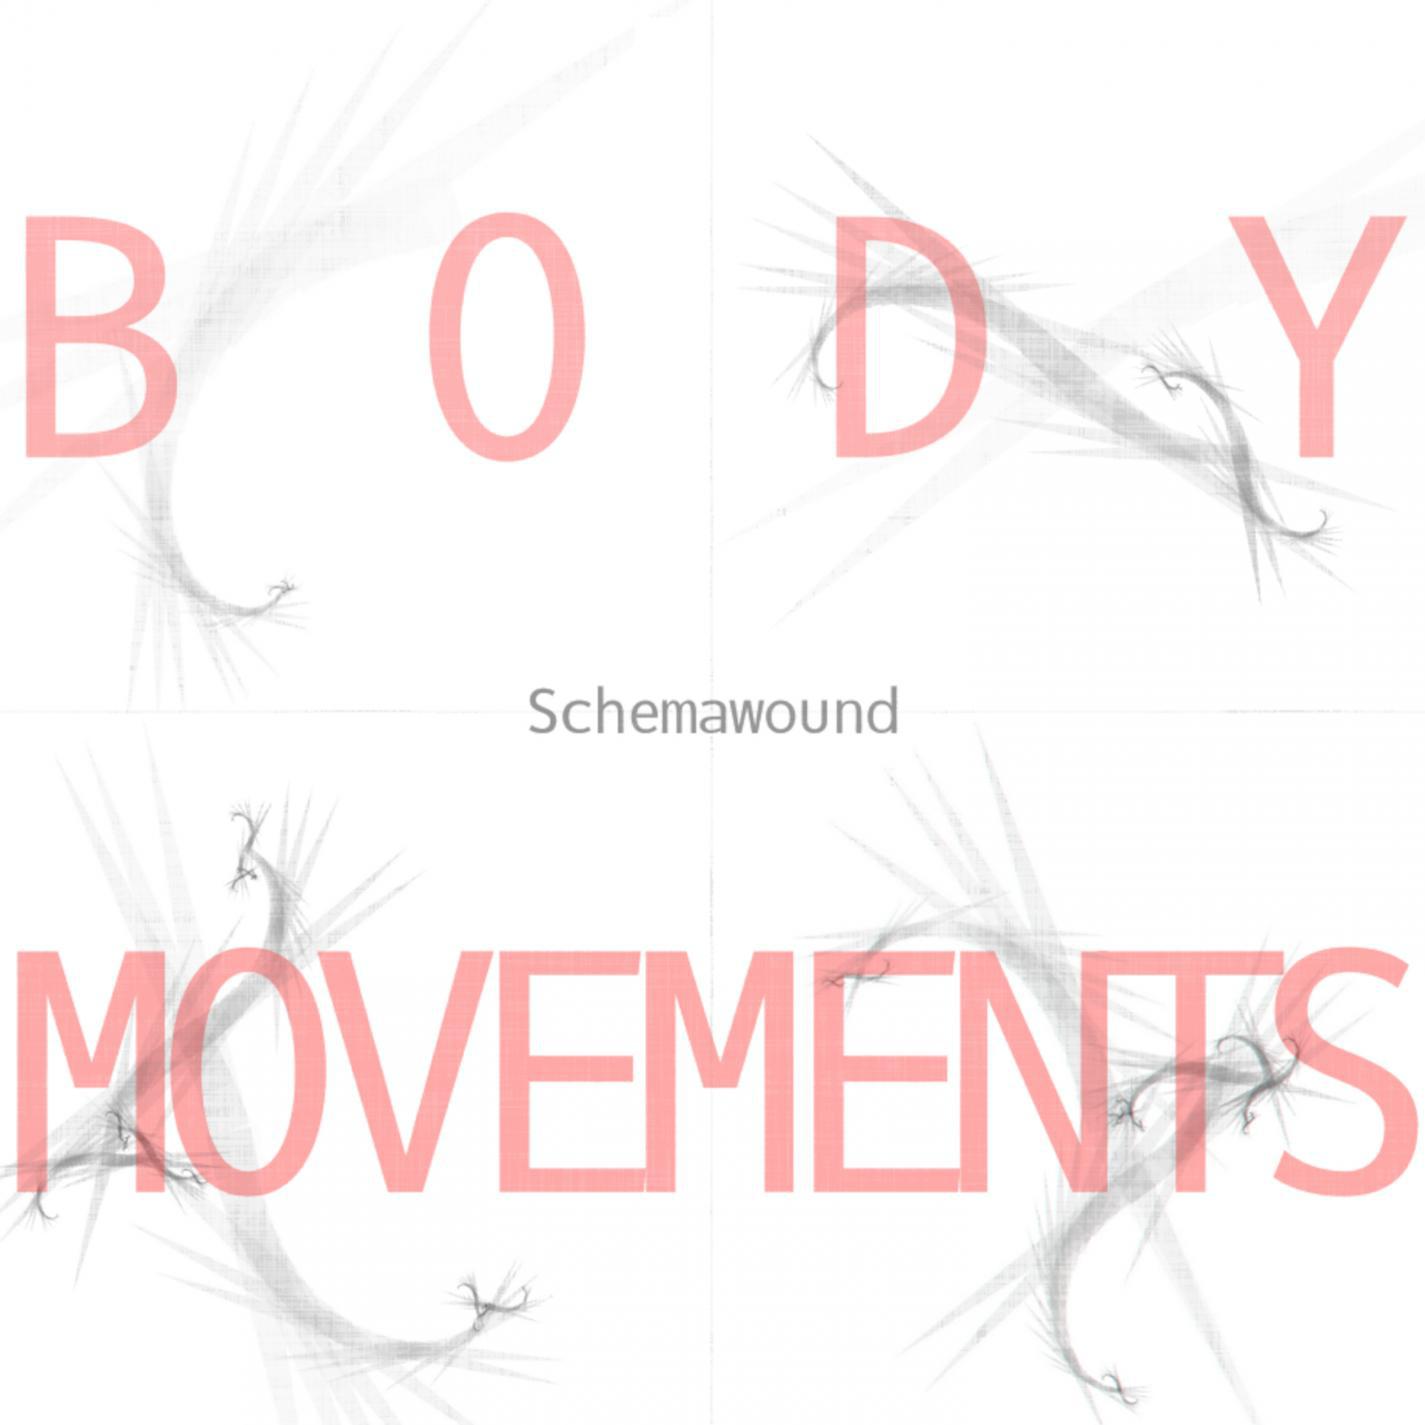 Schemawound - Sound Check (Nicholas Starke Audiolet Remix)